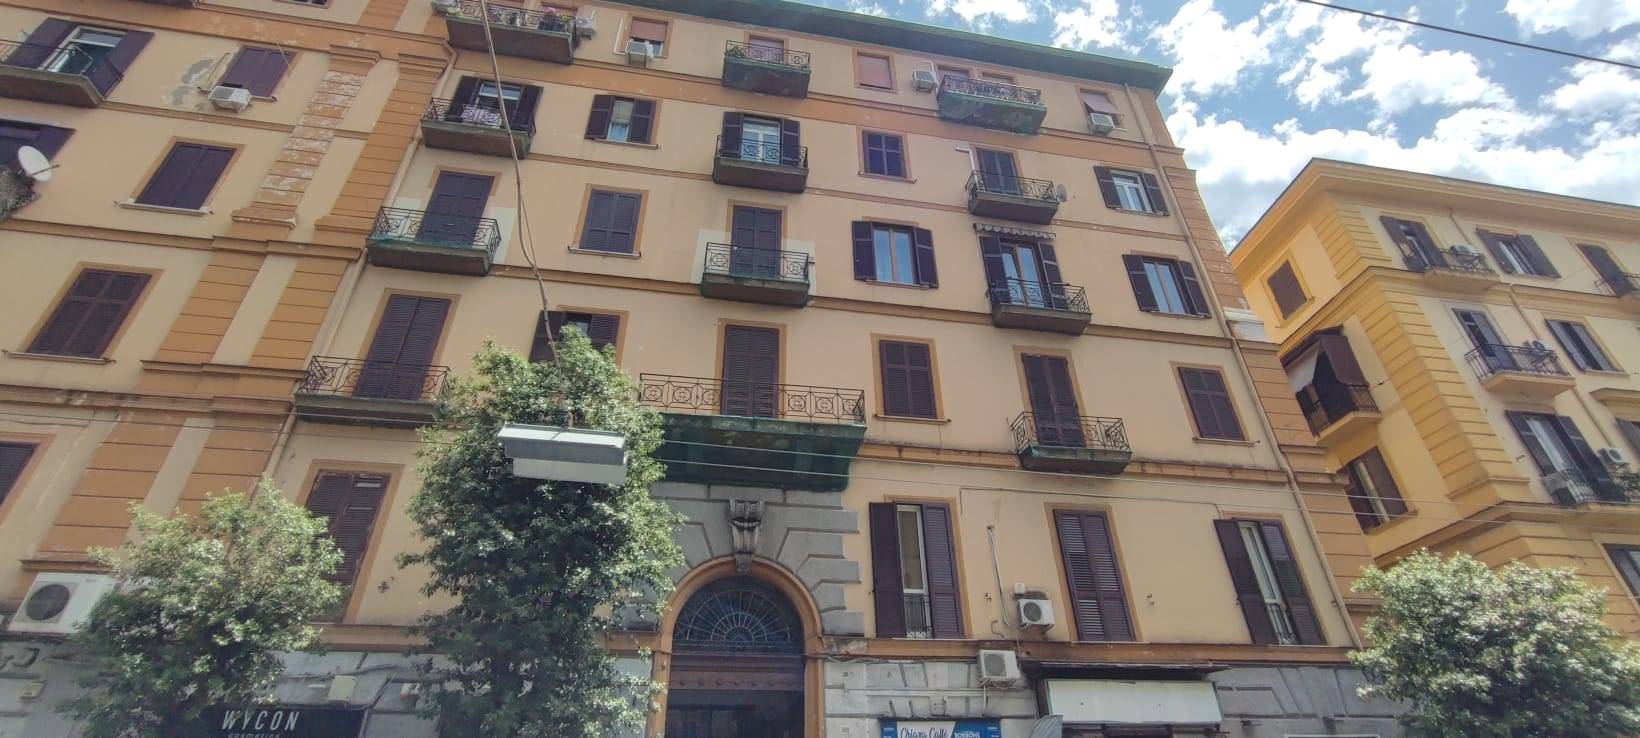 Appartamento in affitto a Napoli, 2 locali, zona Località: PIAZZA GARIBALDI, prezzo € 690 | PortaleAgenzieImmobiliari.it